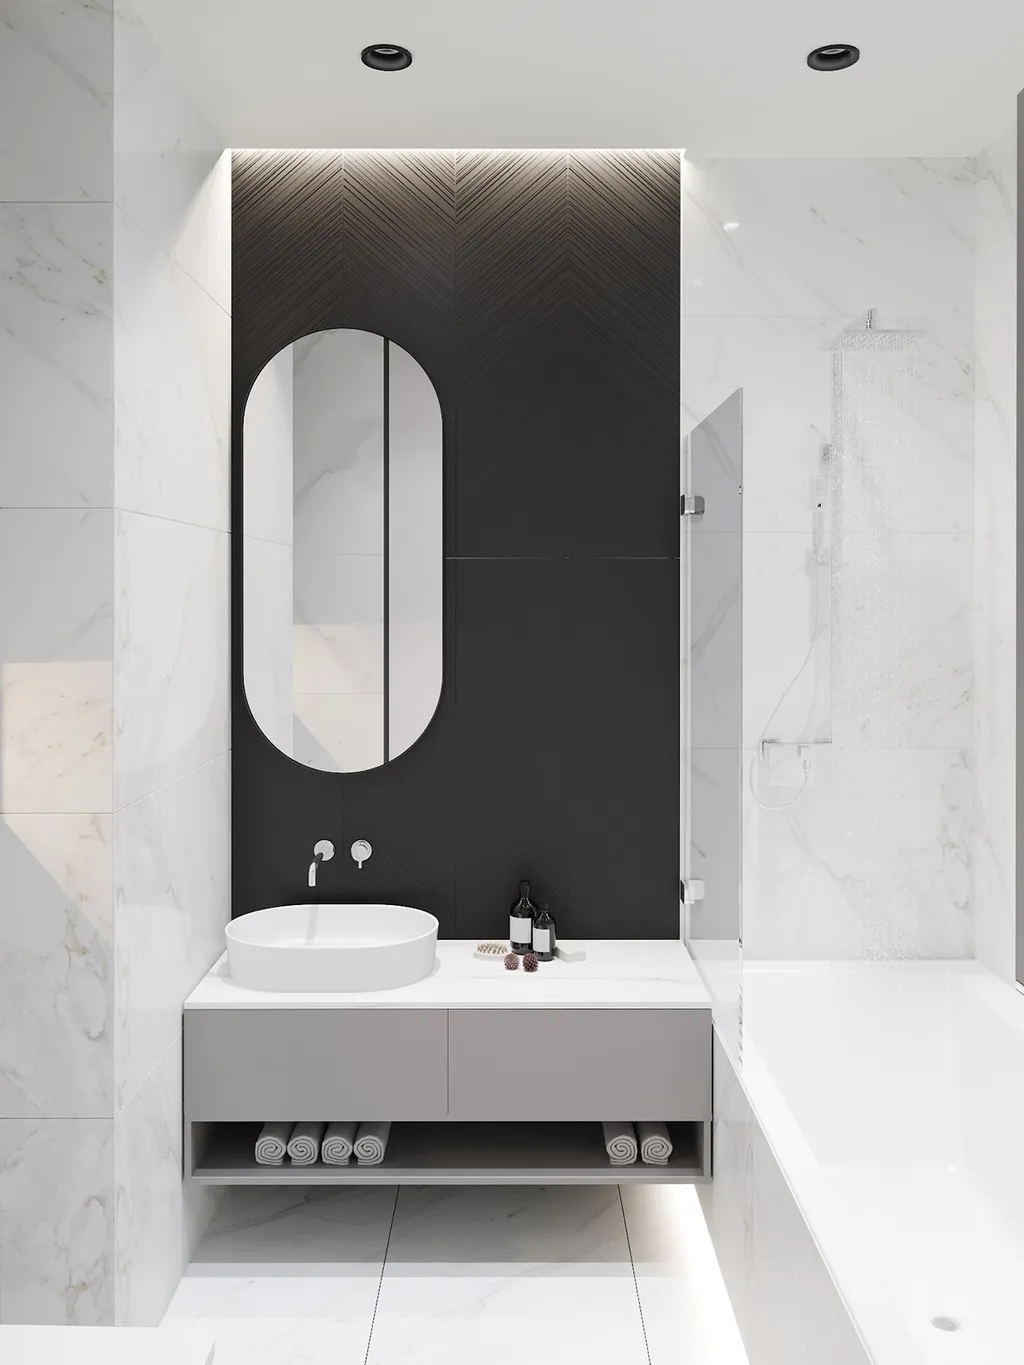 Công trình hoàn thiện nội thất phòng tắm cho căn hộ theo phong cách Neo Classic & Minimalism số 1. Thi công hoàn thiện bởi TD INTERIOR.